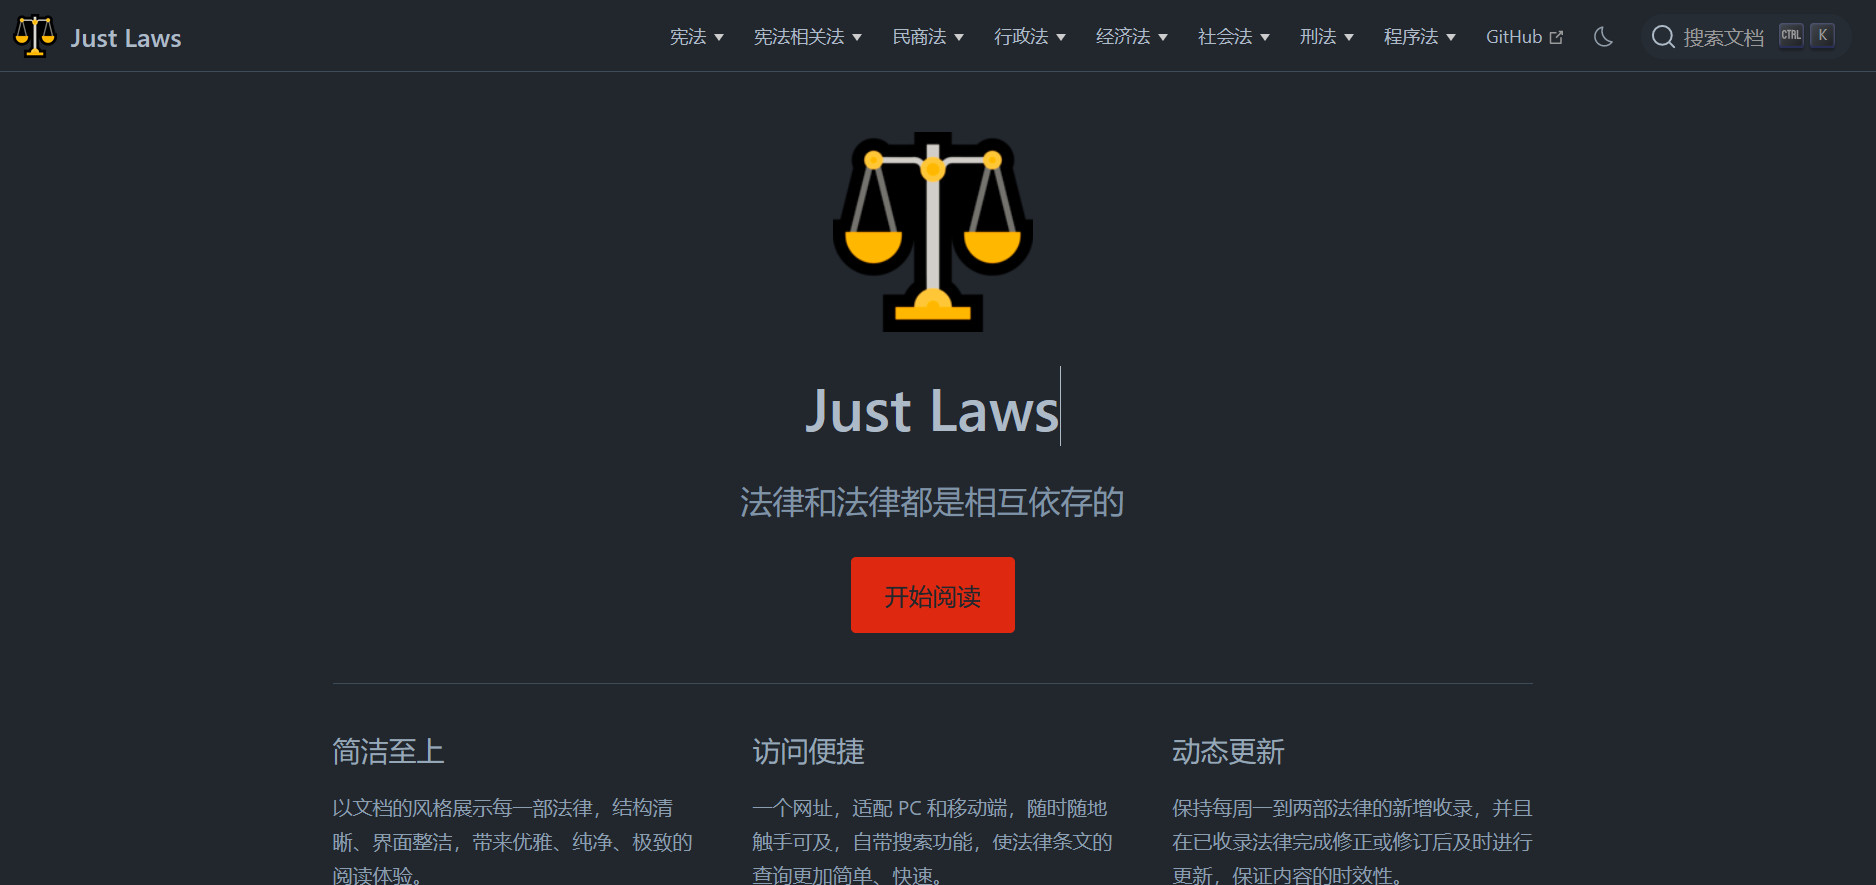 Just Laws，开源简洁便捷的中国法律文库